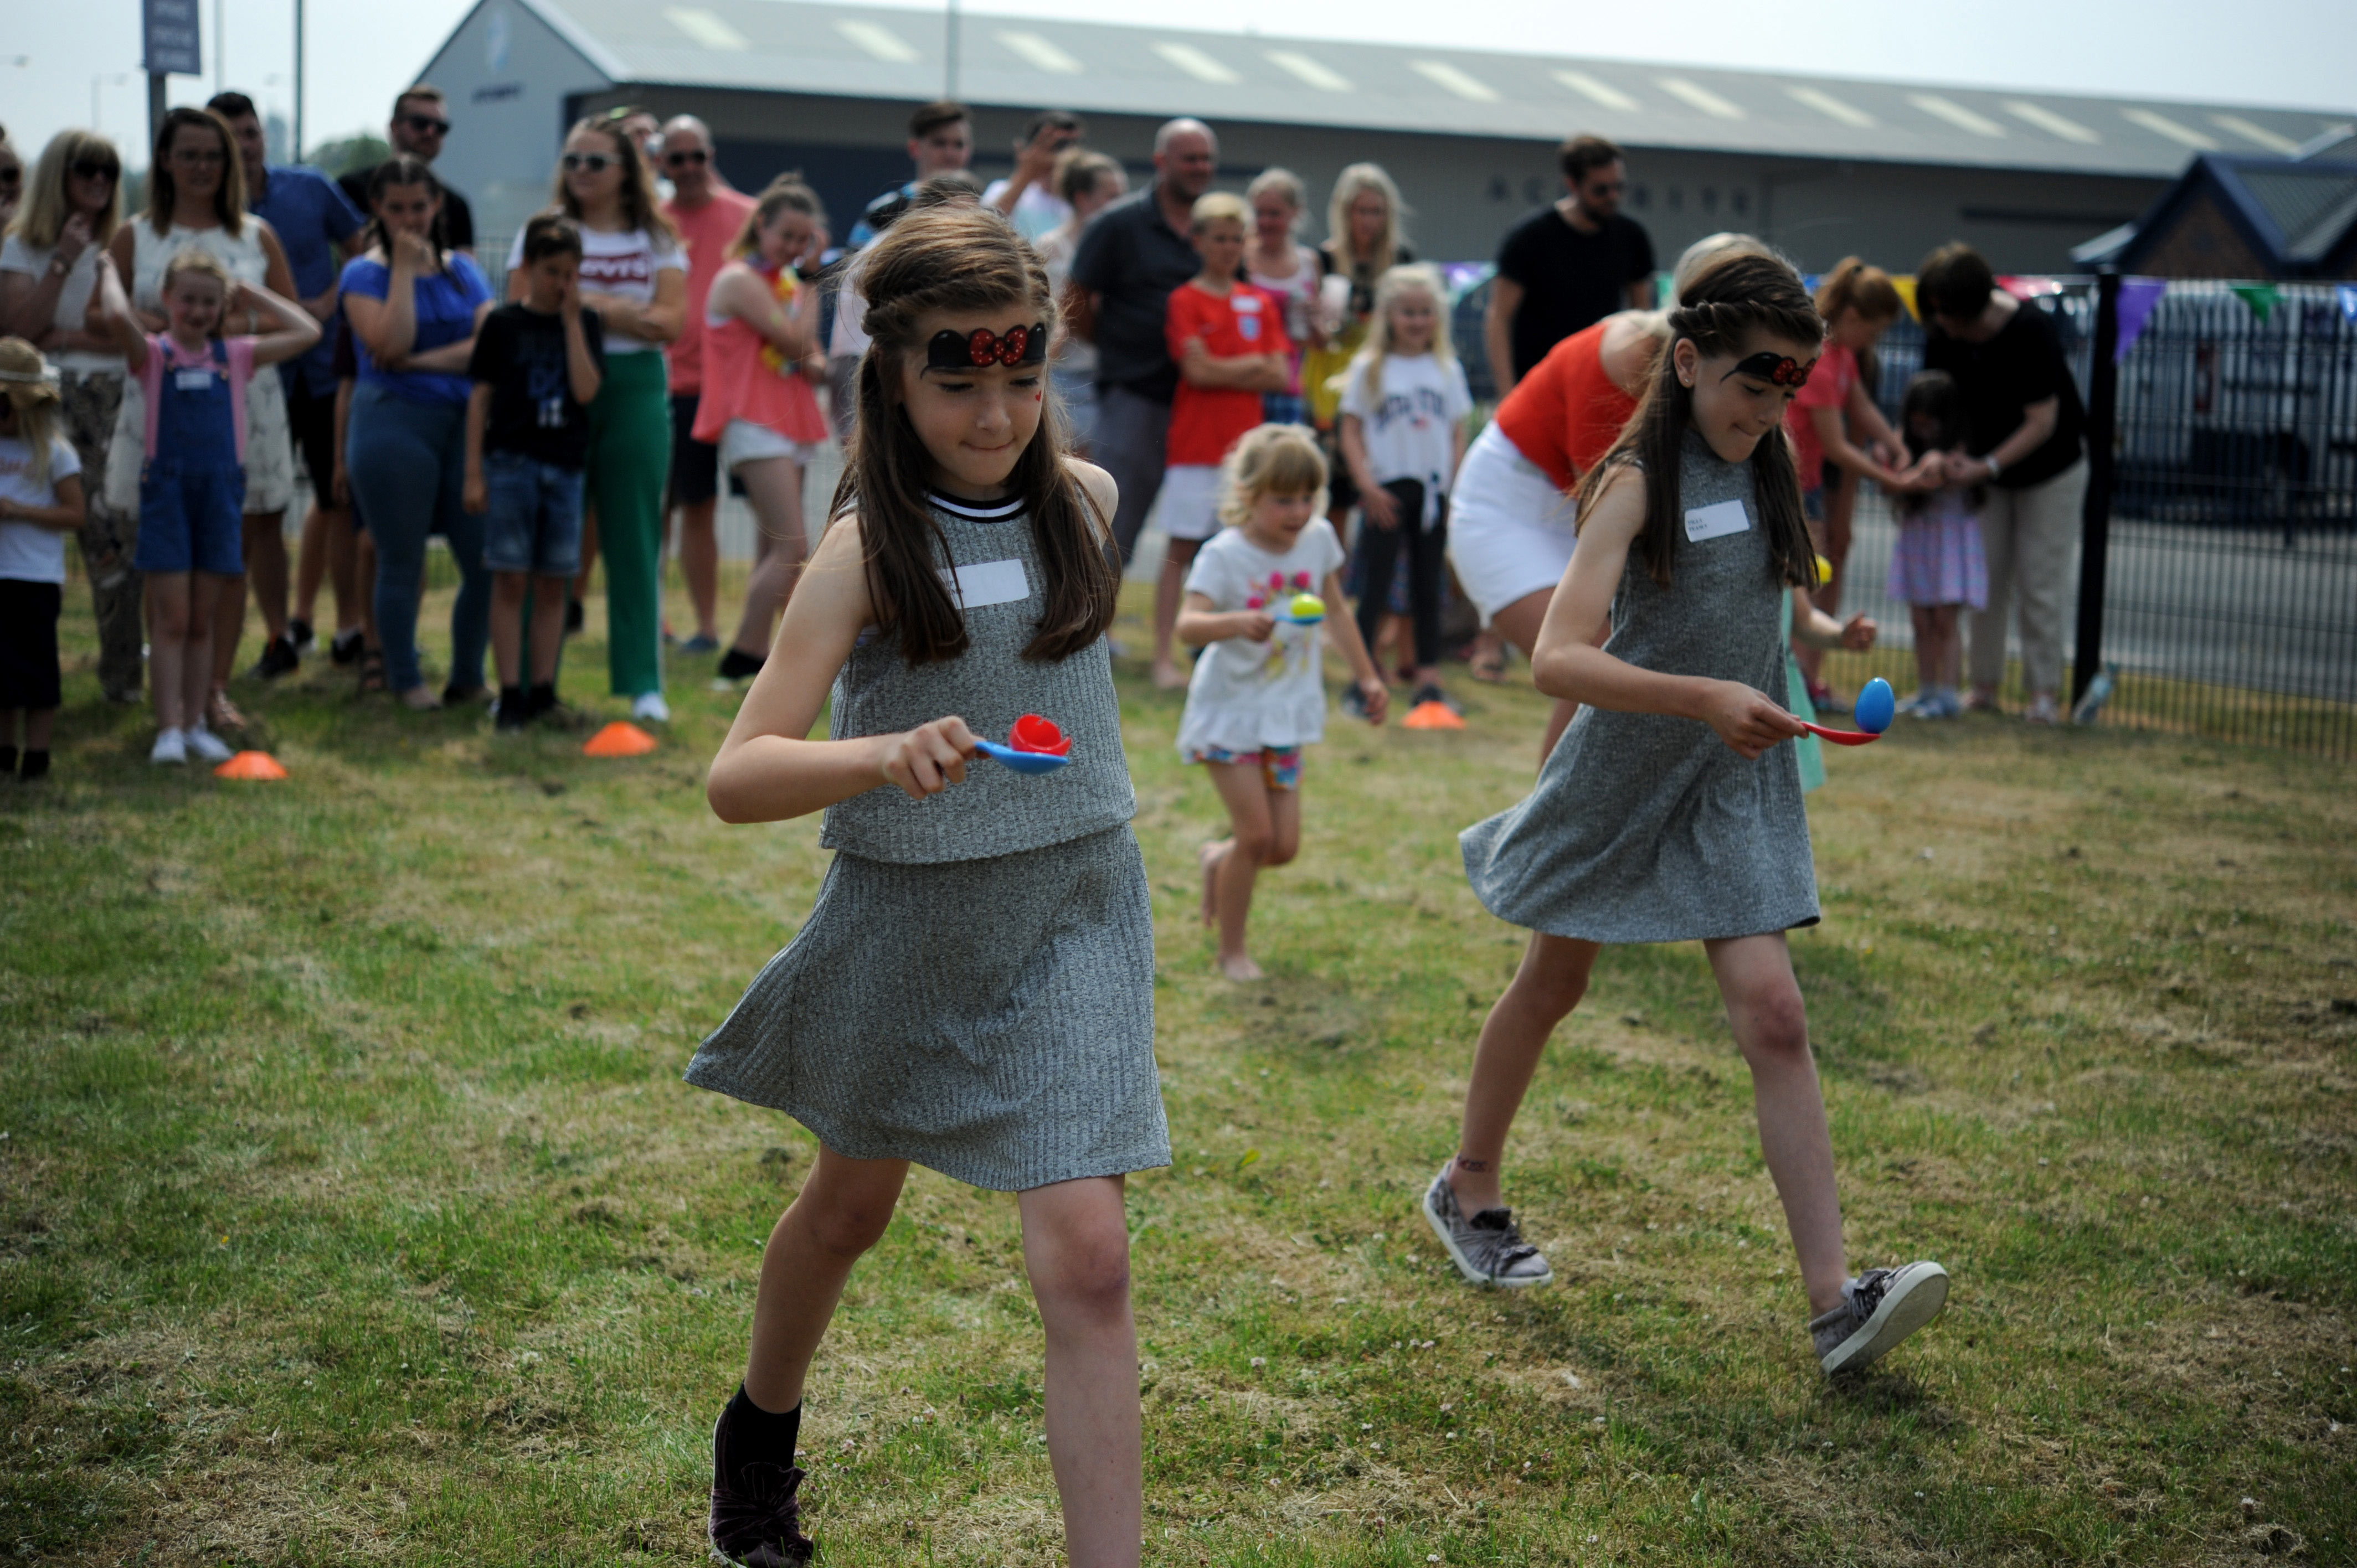 Bender UK Family Fun-day Raffle raises £1,000 for Sandside School